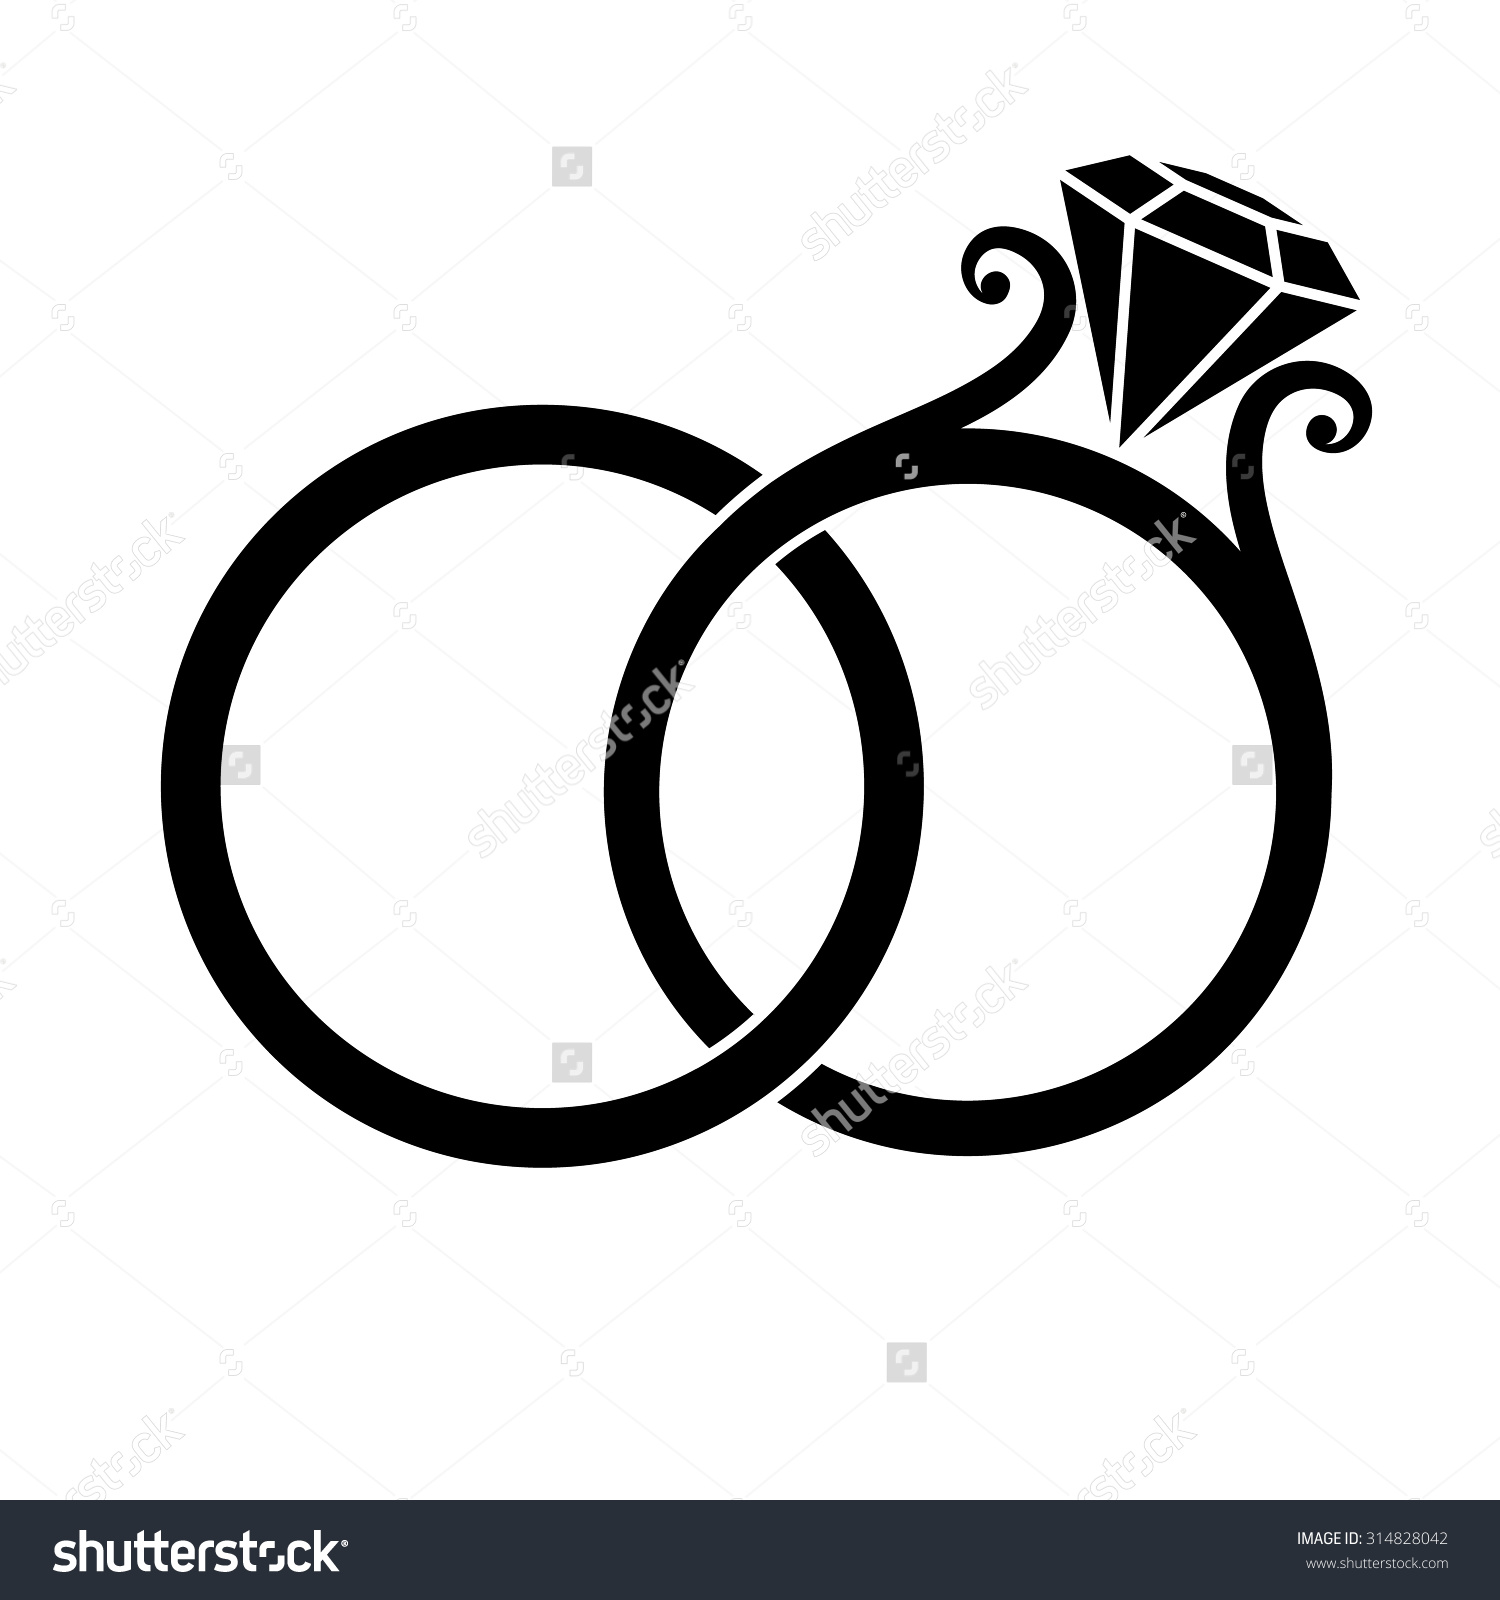 Gold Wedding Rings Image